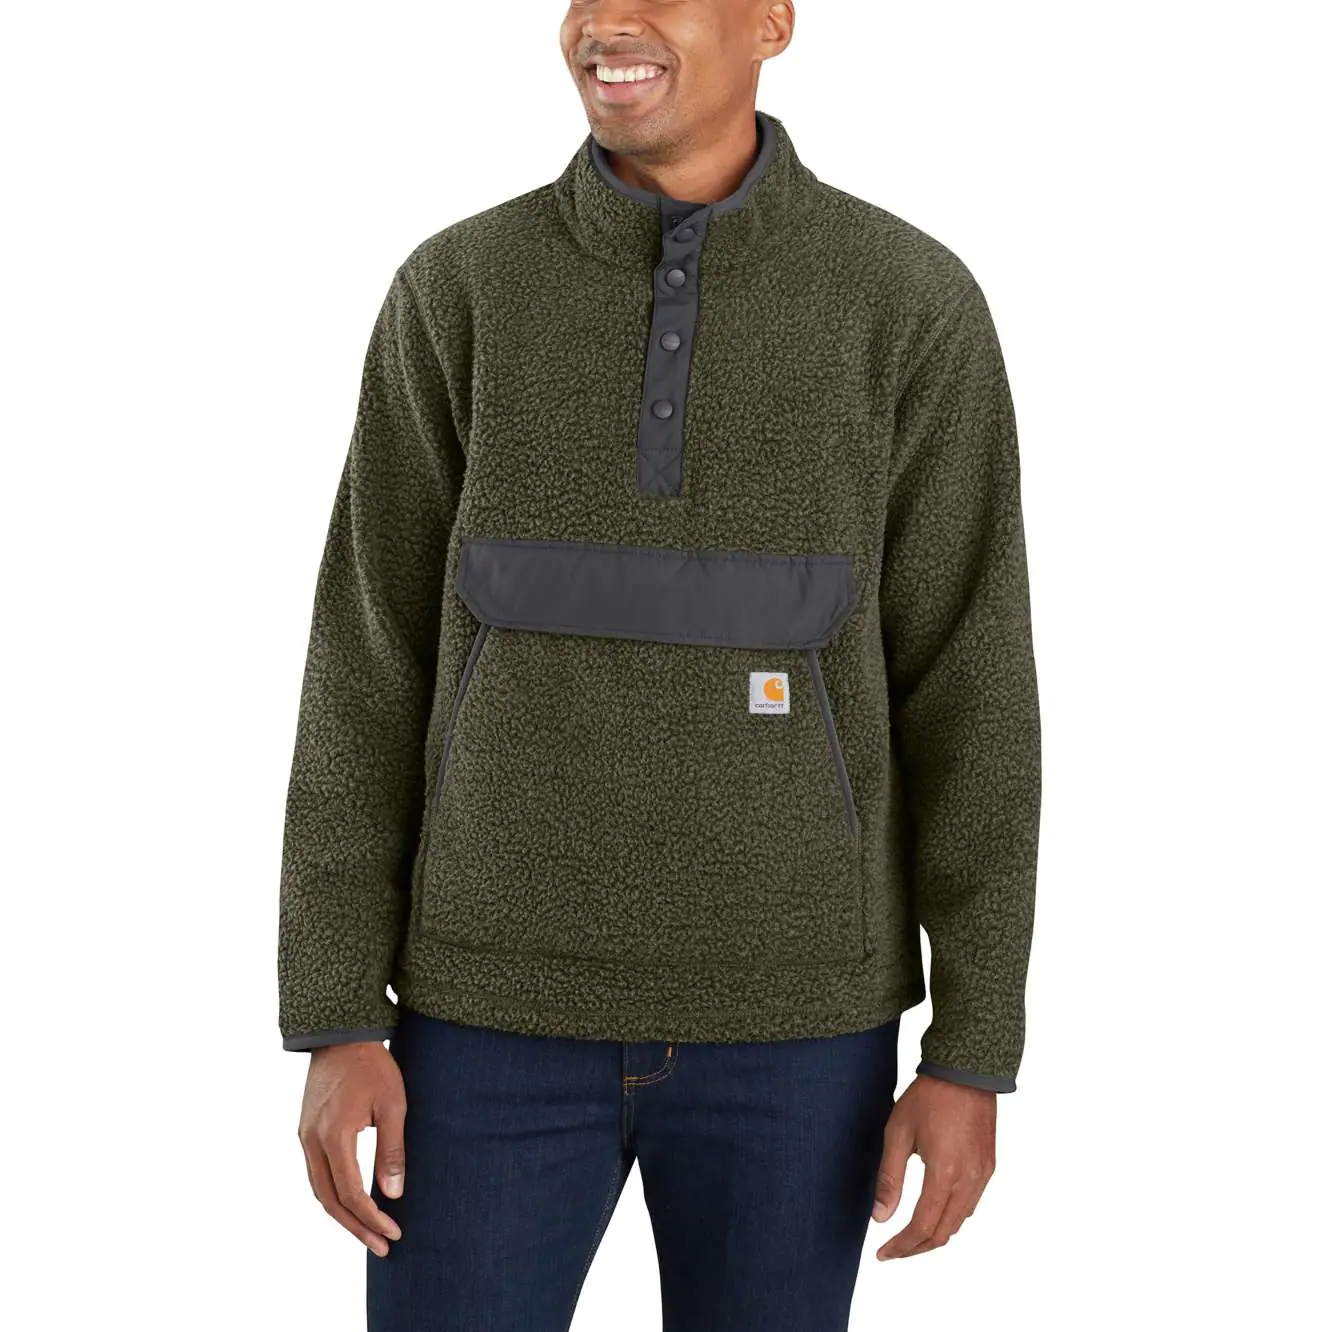 Carhartt relaxed fit fleece sweater